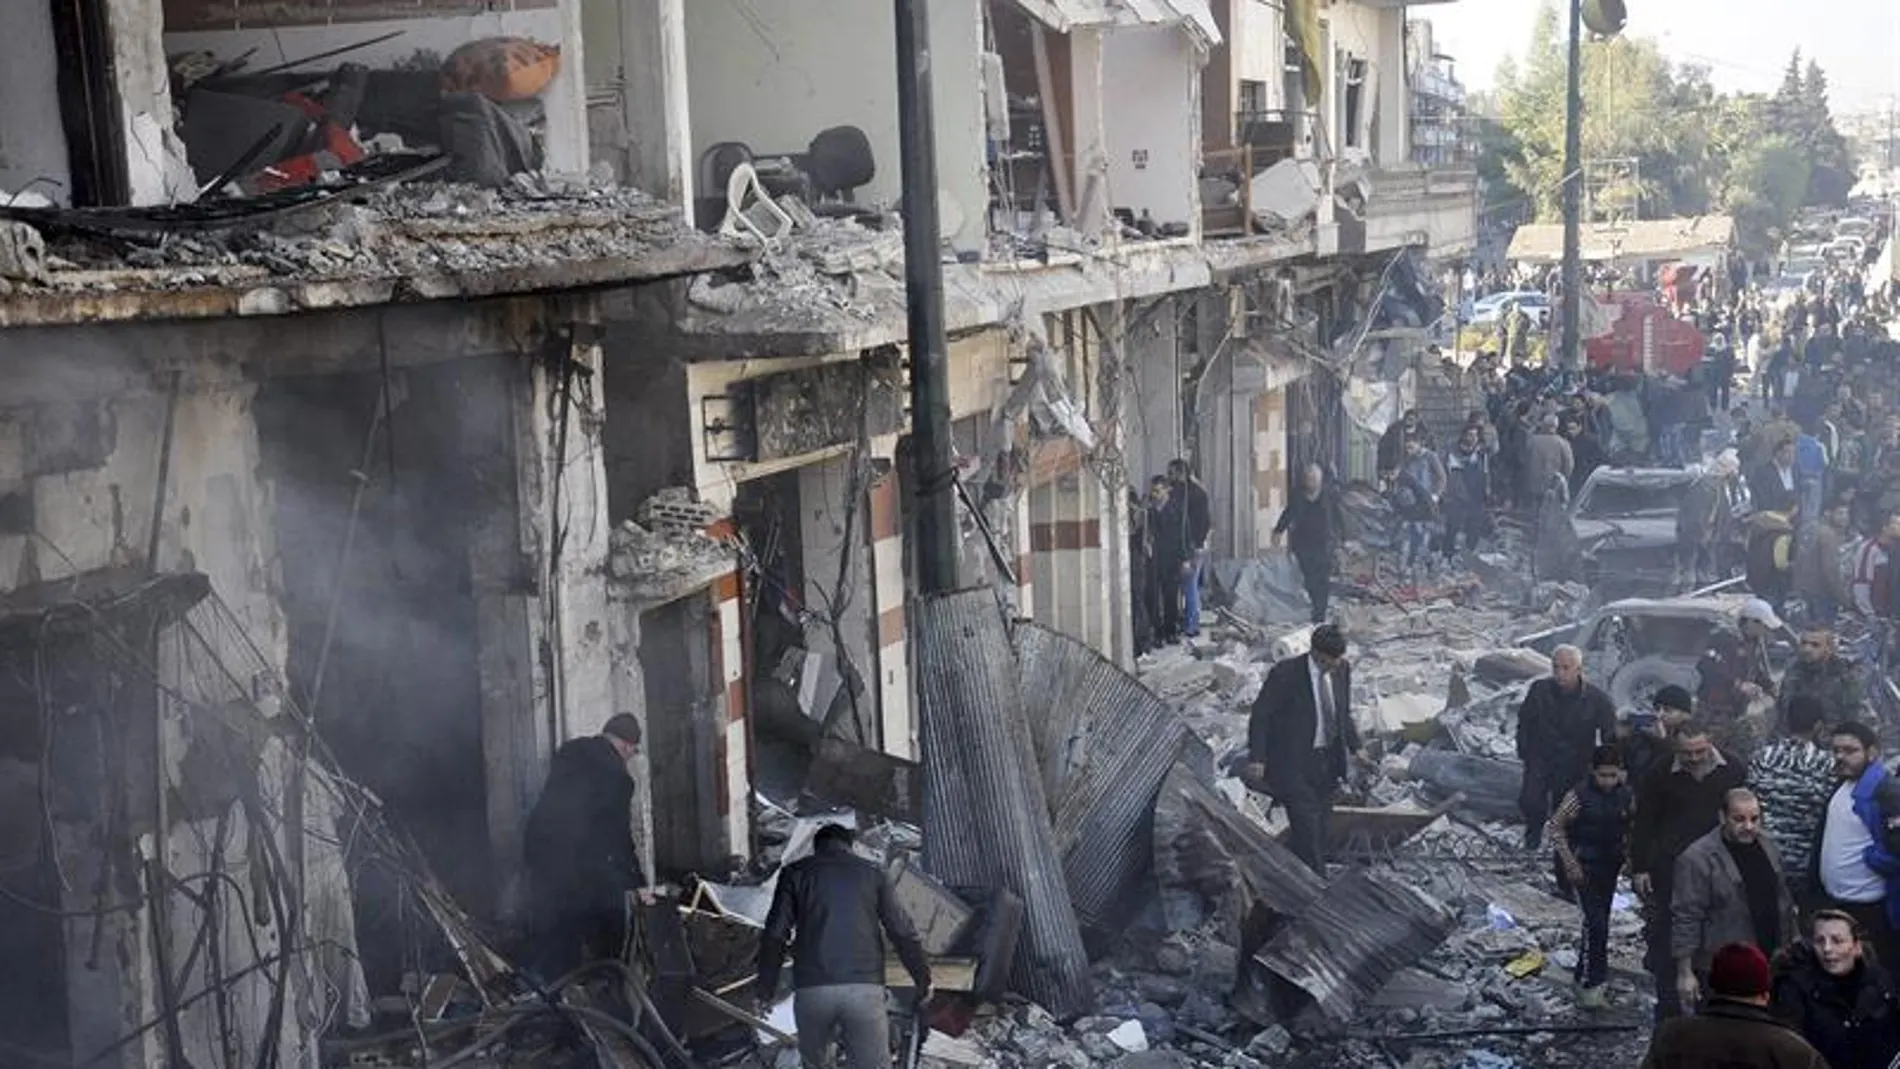 Policías sirios inspeccionan el lugar donde se ha producido un atentado en Homs, Siria